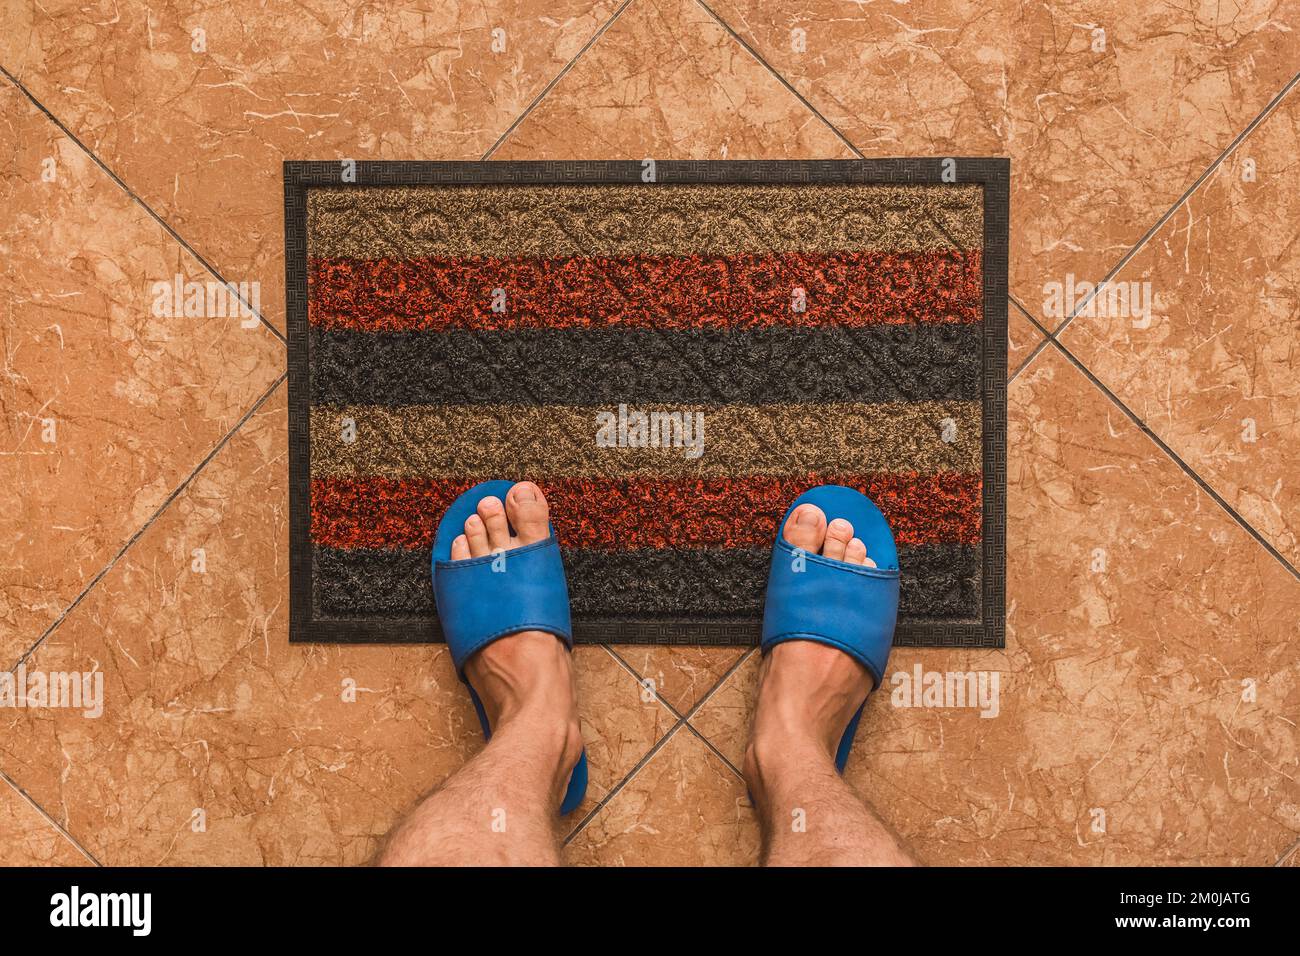 Les pieds mâles dans des pantoufles maison bleues se tiennent sur un tapis de pied sur un fond de sol carrelé brun texture, vue de dessus. Banque D'Images